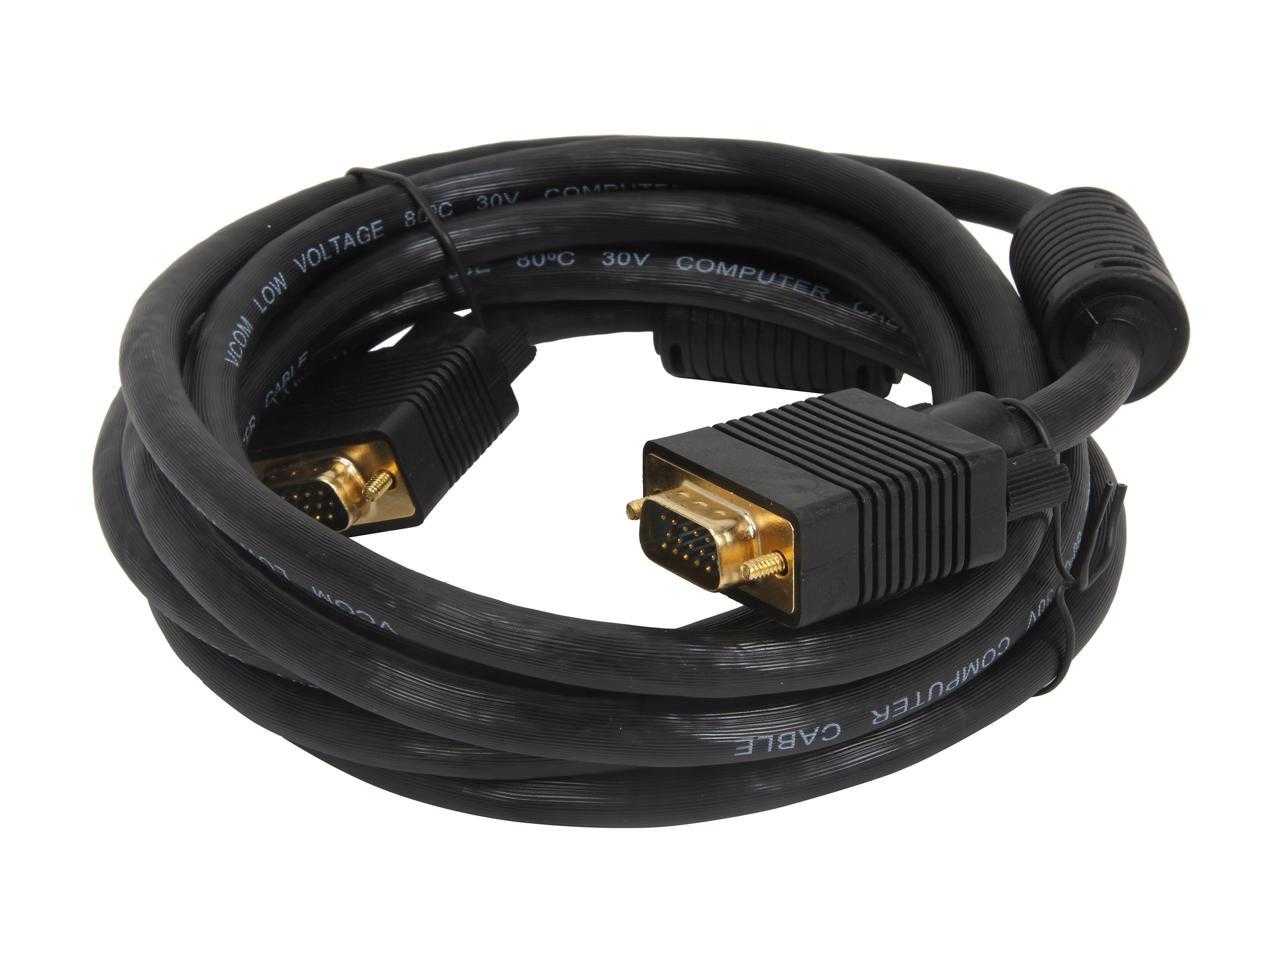 VCOM, Vcom Cg381D-G-10 10Ft Vga Male To Vga Male Cable (Black)